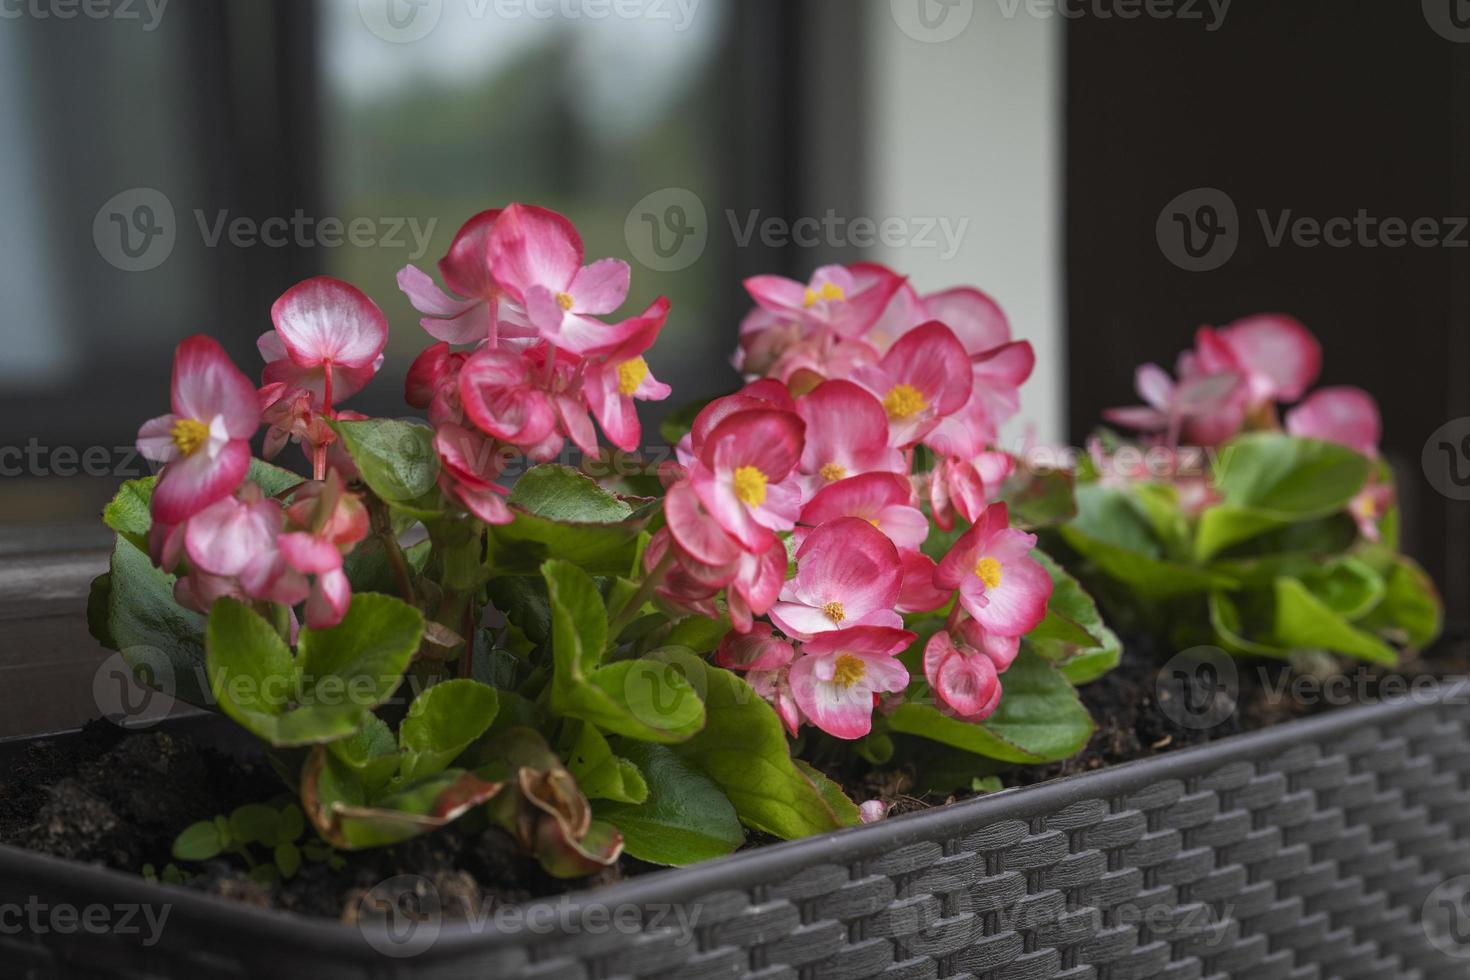 uma bela flor begônia de cor fúcsia crescendo no pote no terraço. conceito de plantio e jardinagem foto